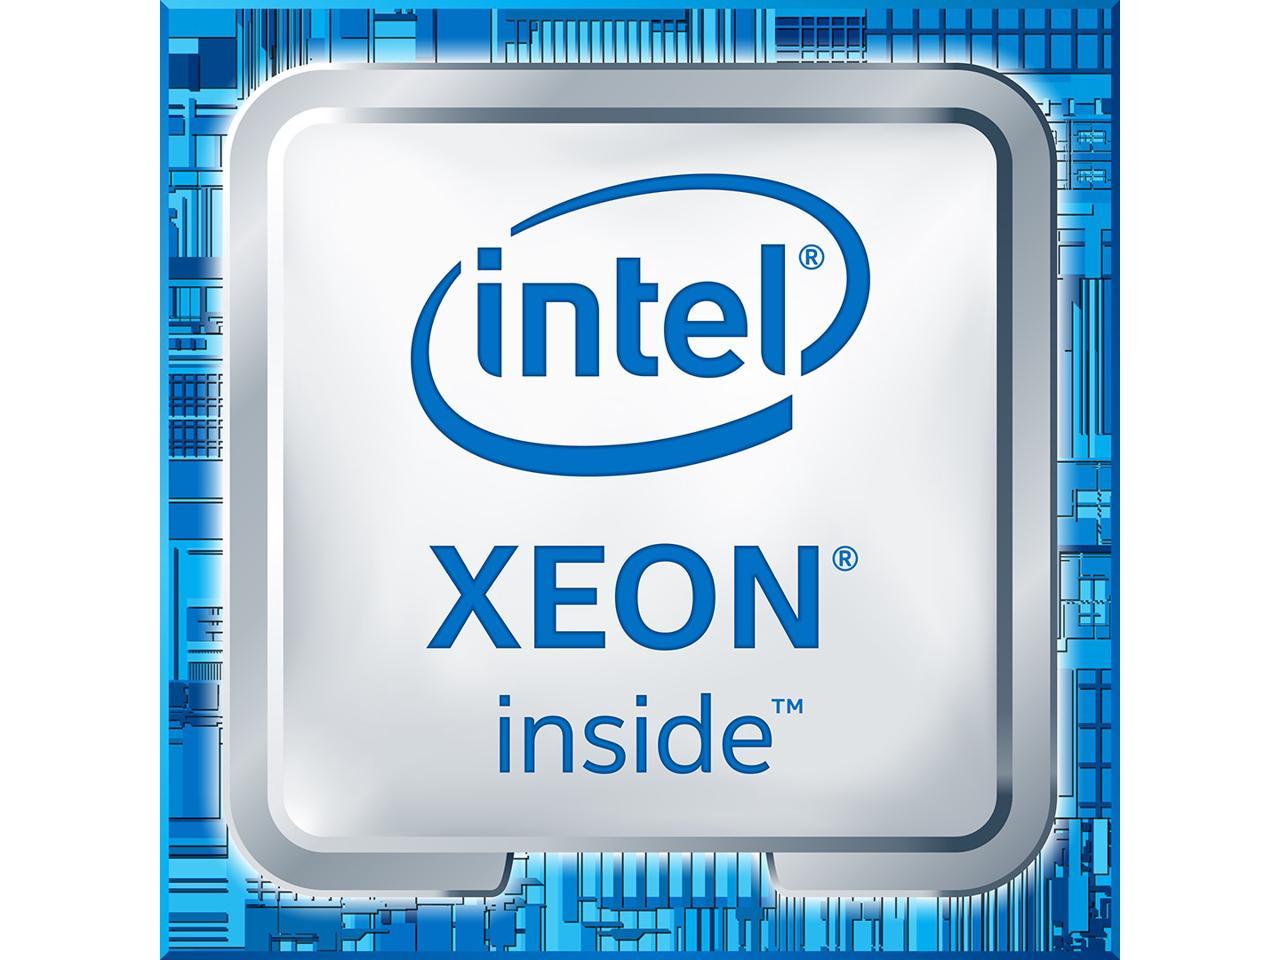 Intel Corp. Xeon W2145 Processor Tray (CD8067303533601